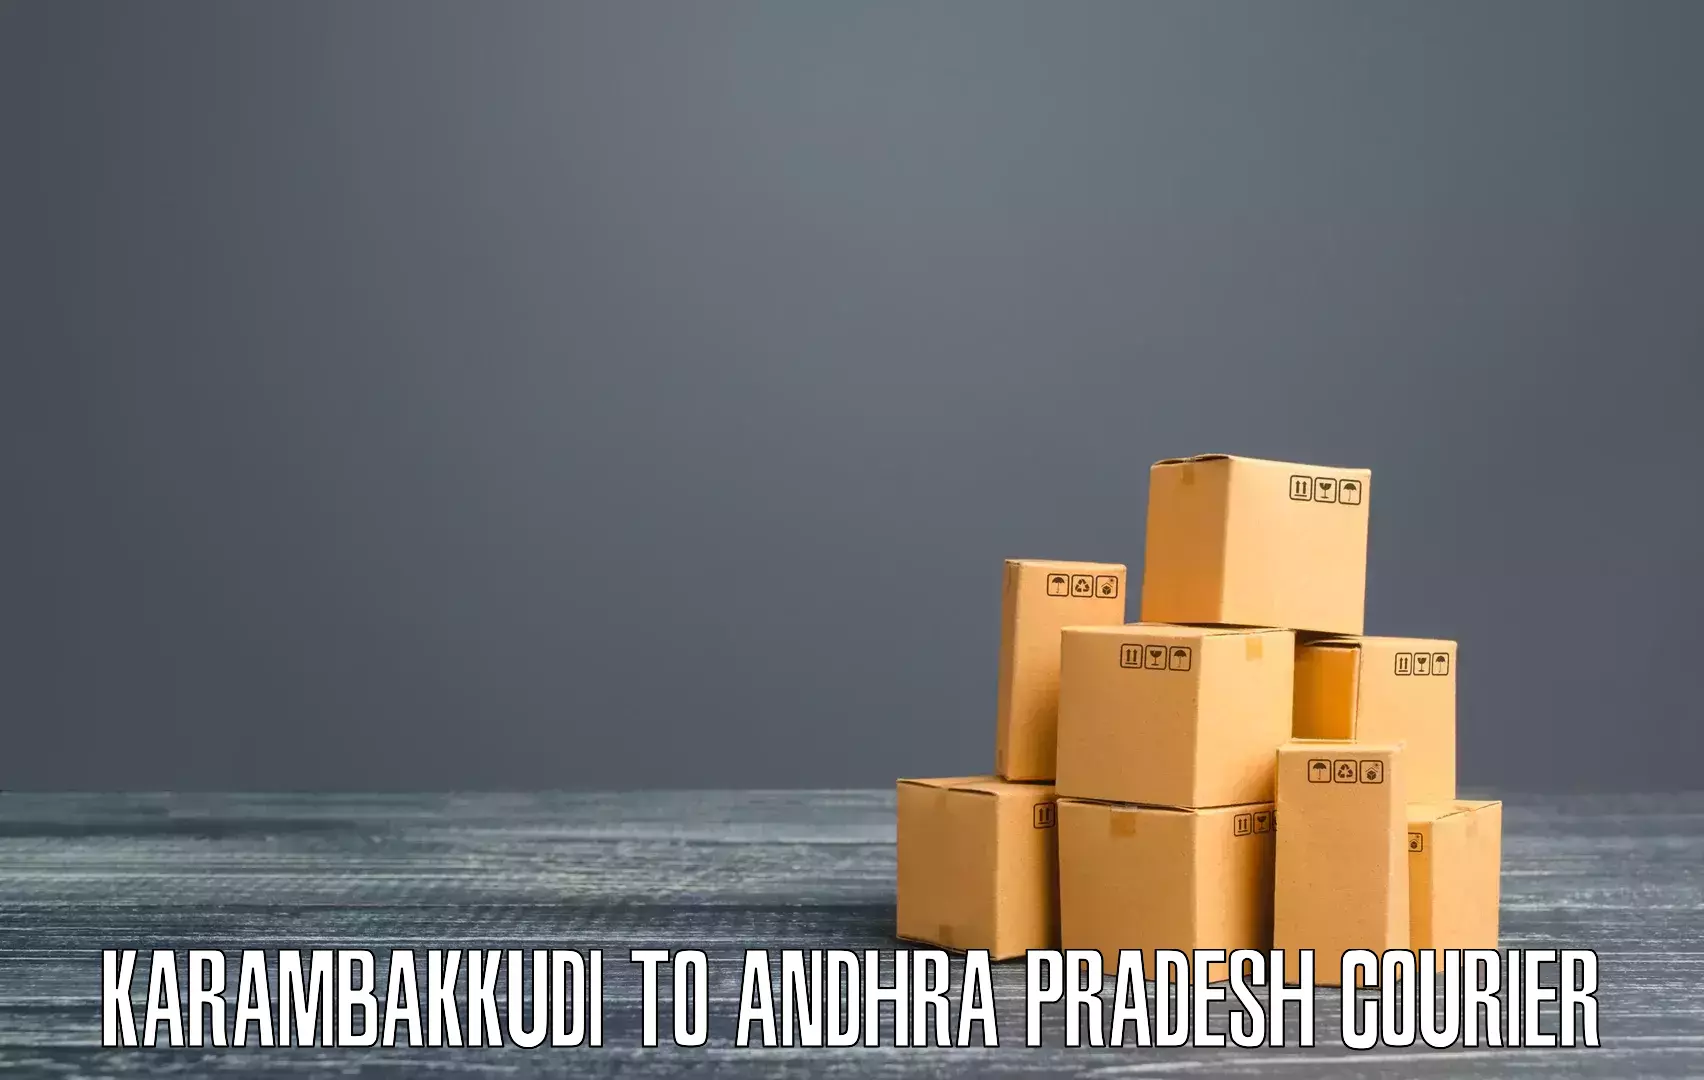 Efficient order fulfillment Karambakkudi to Andhra Pradesh